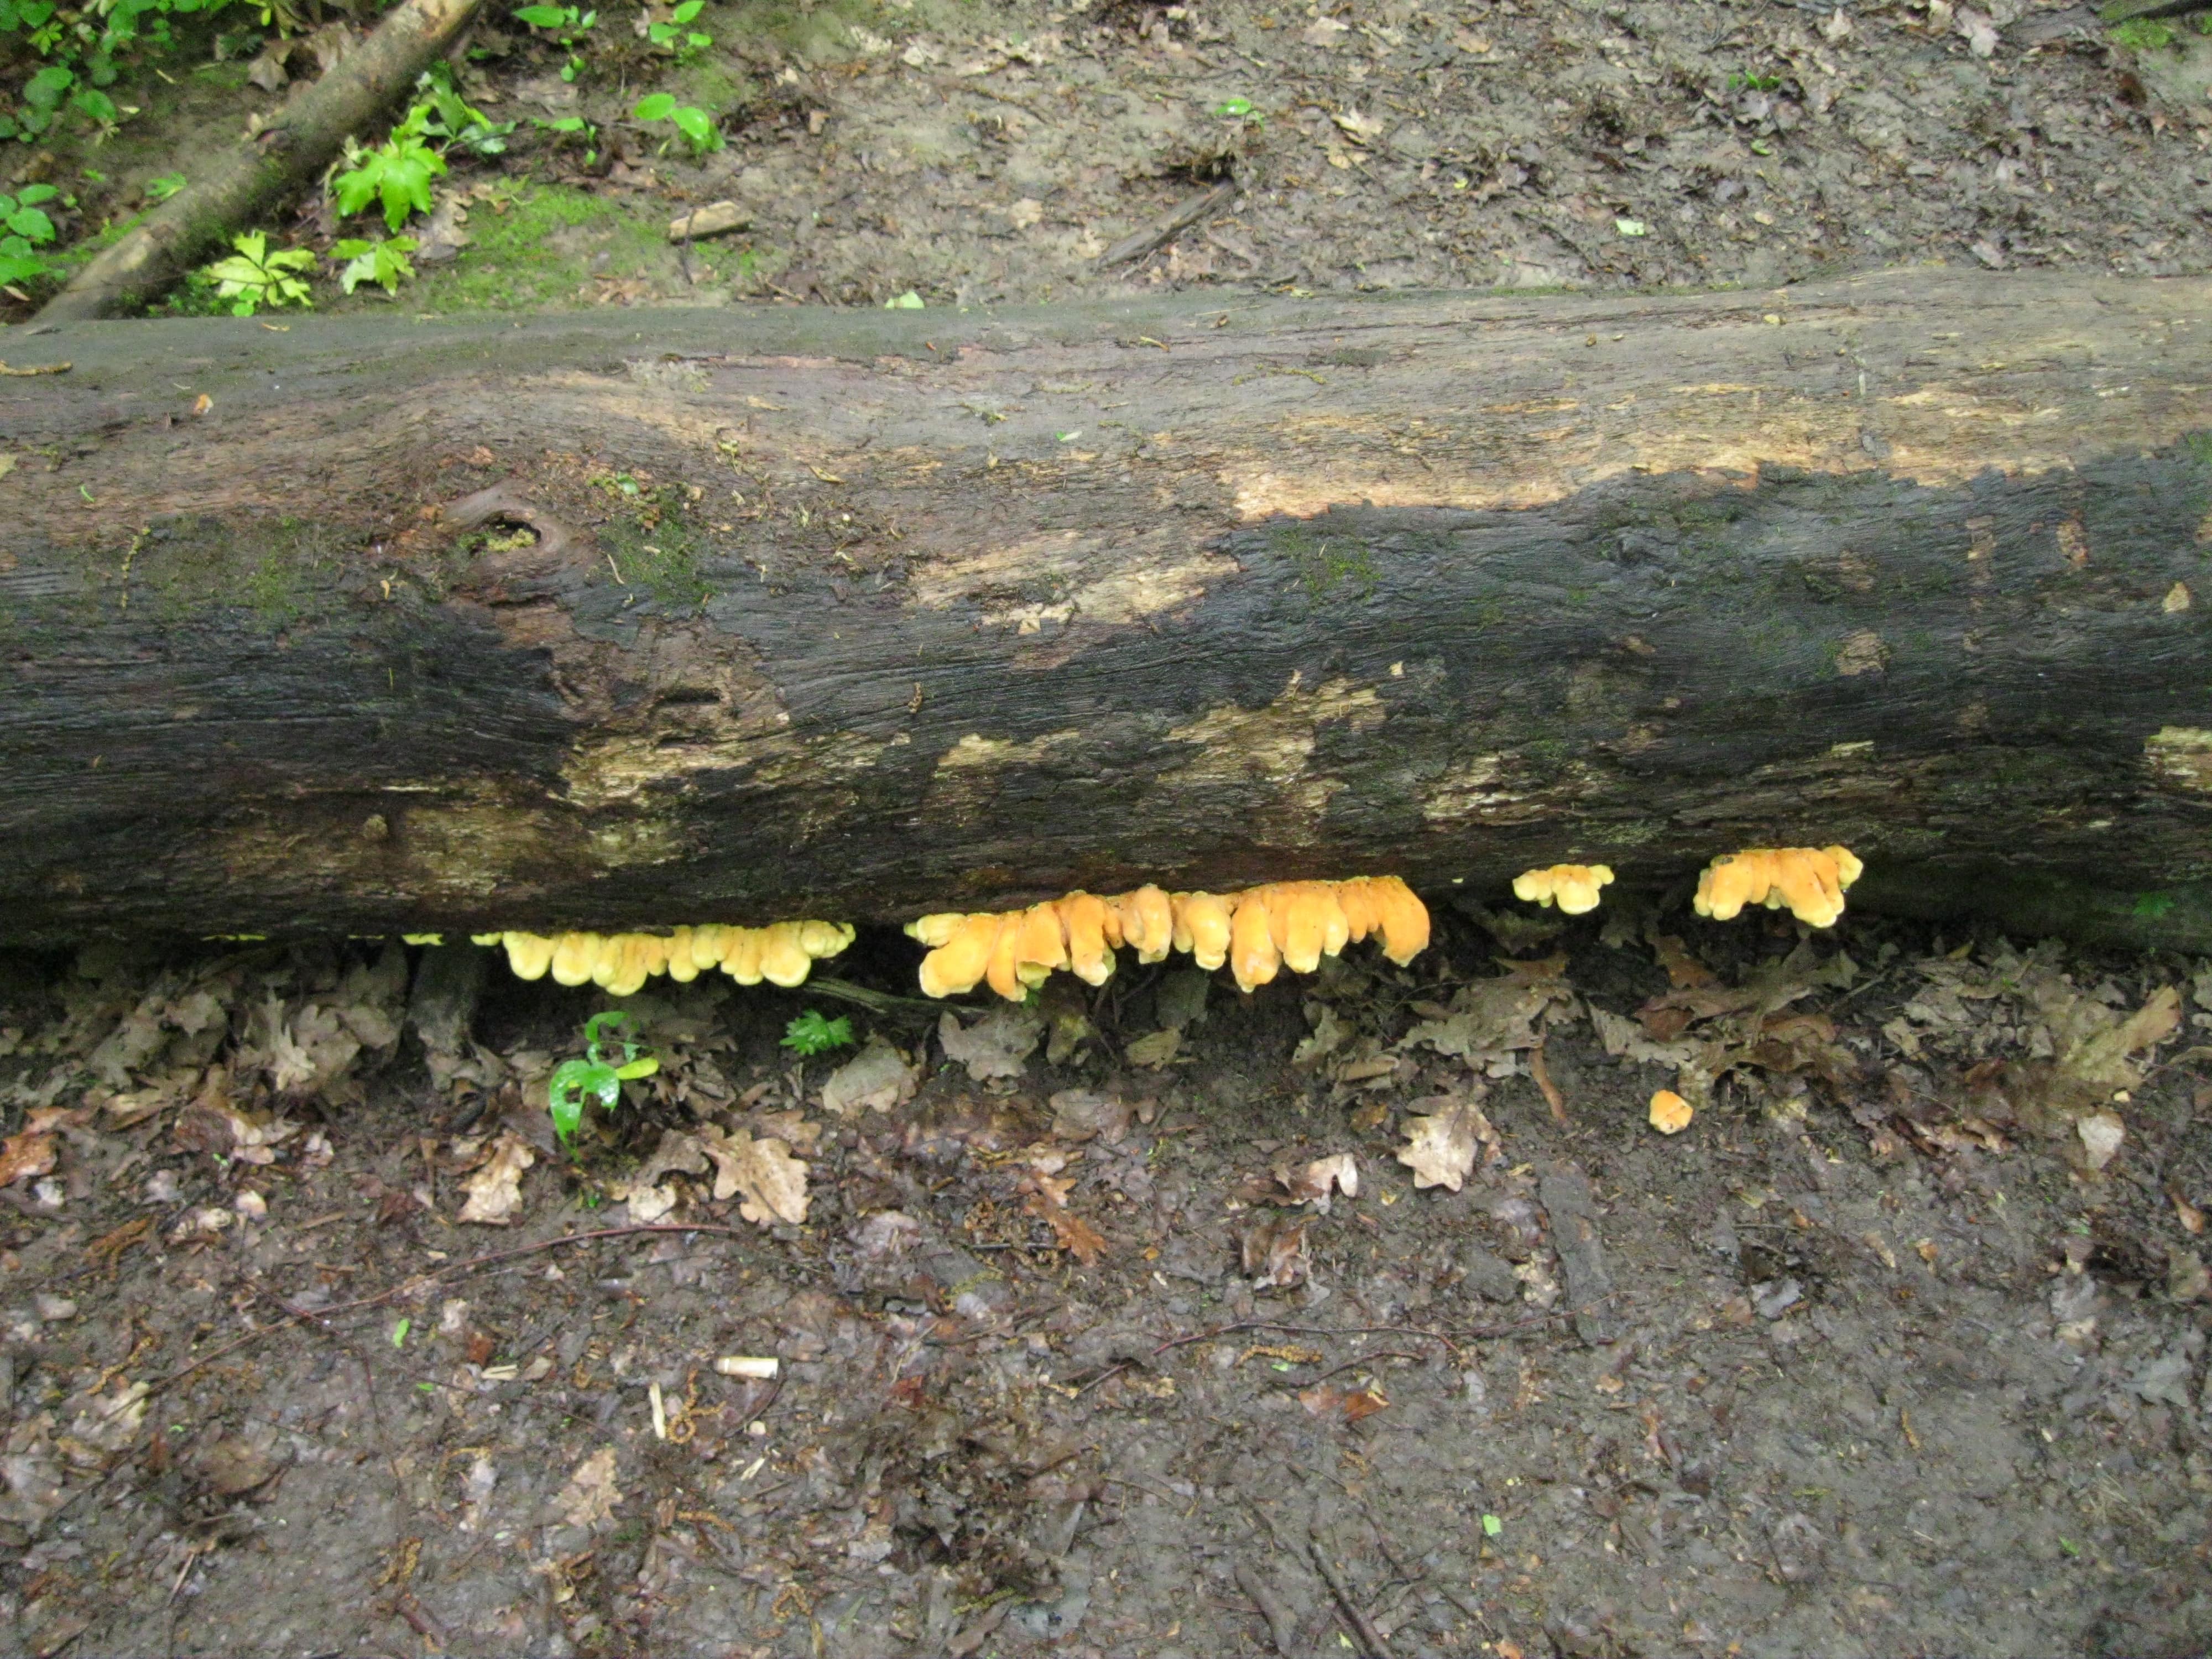 Трутовик серно-желтый весенний съедобный гриб из московского леса. Laetiporus sulphureus